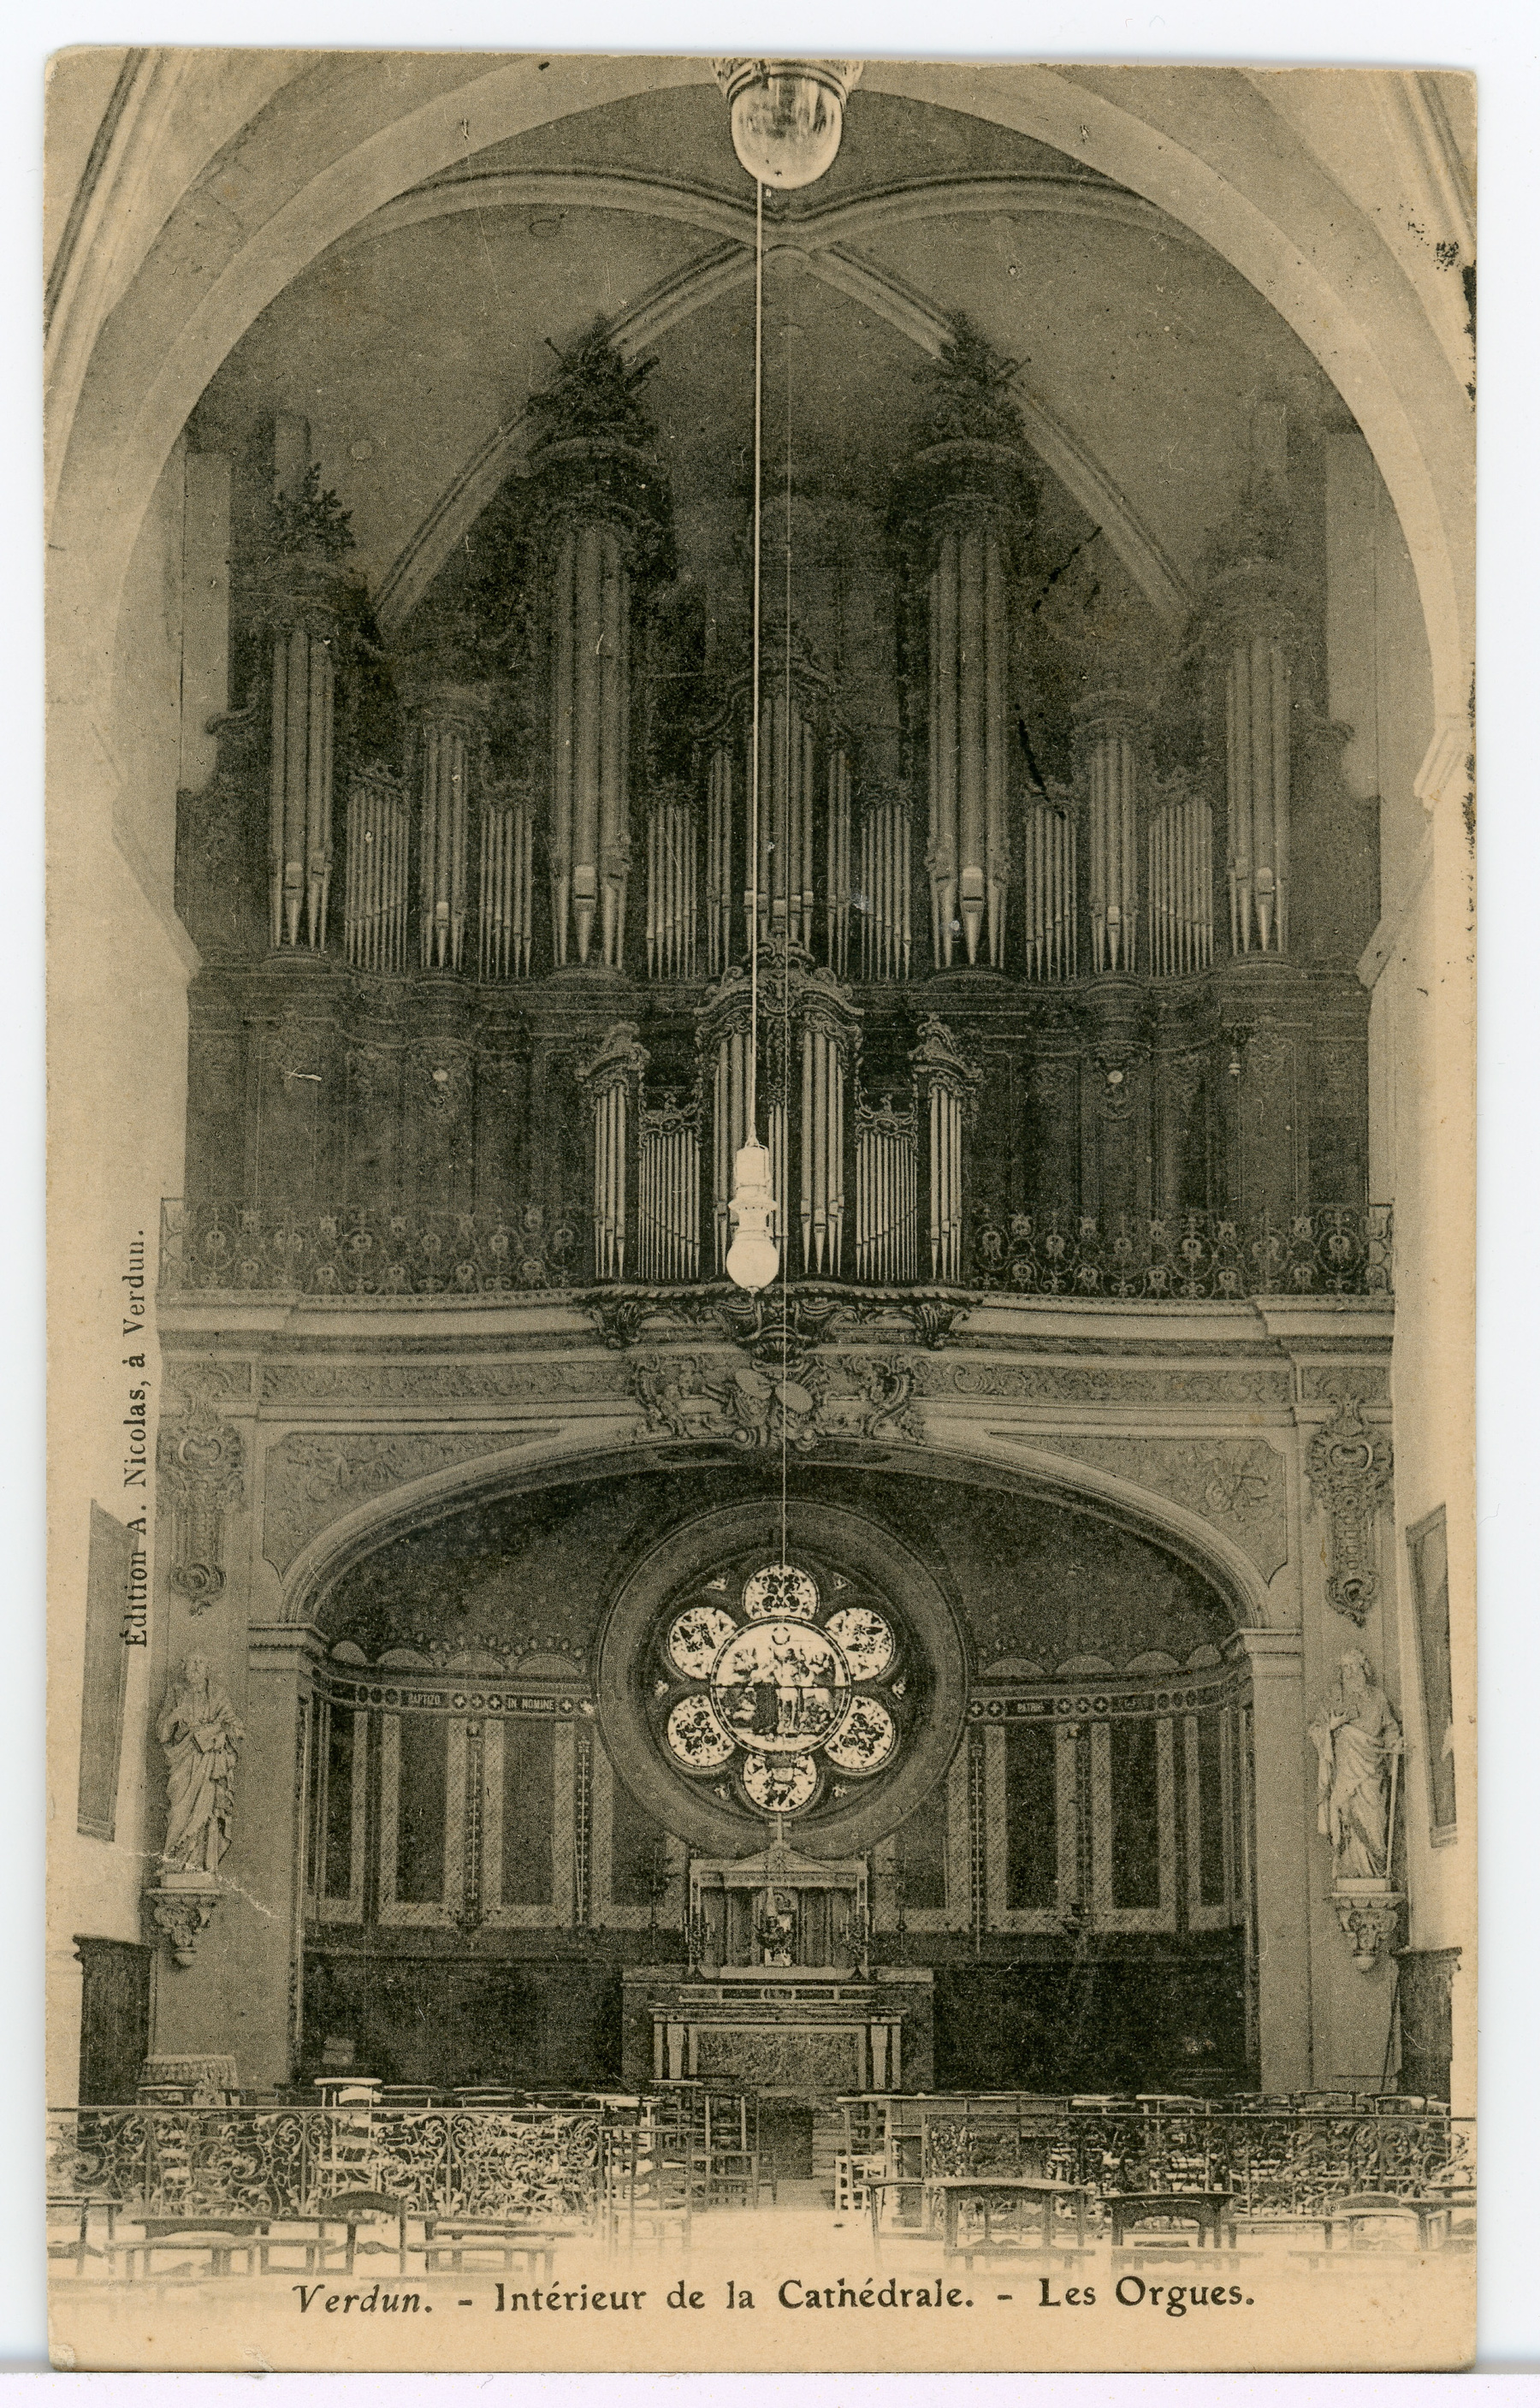 Contenu du Verdun. Intérieur de la cathédrale. Les orgues